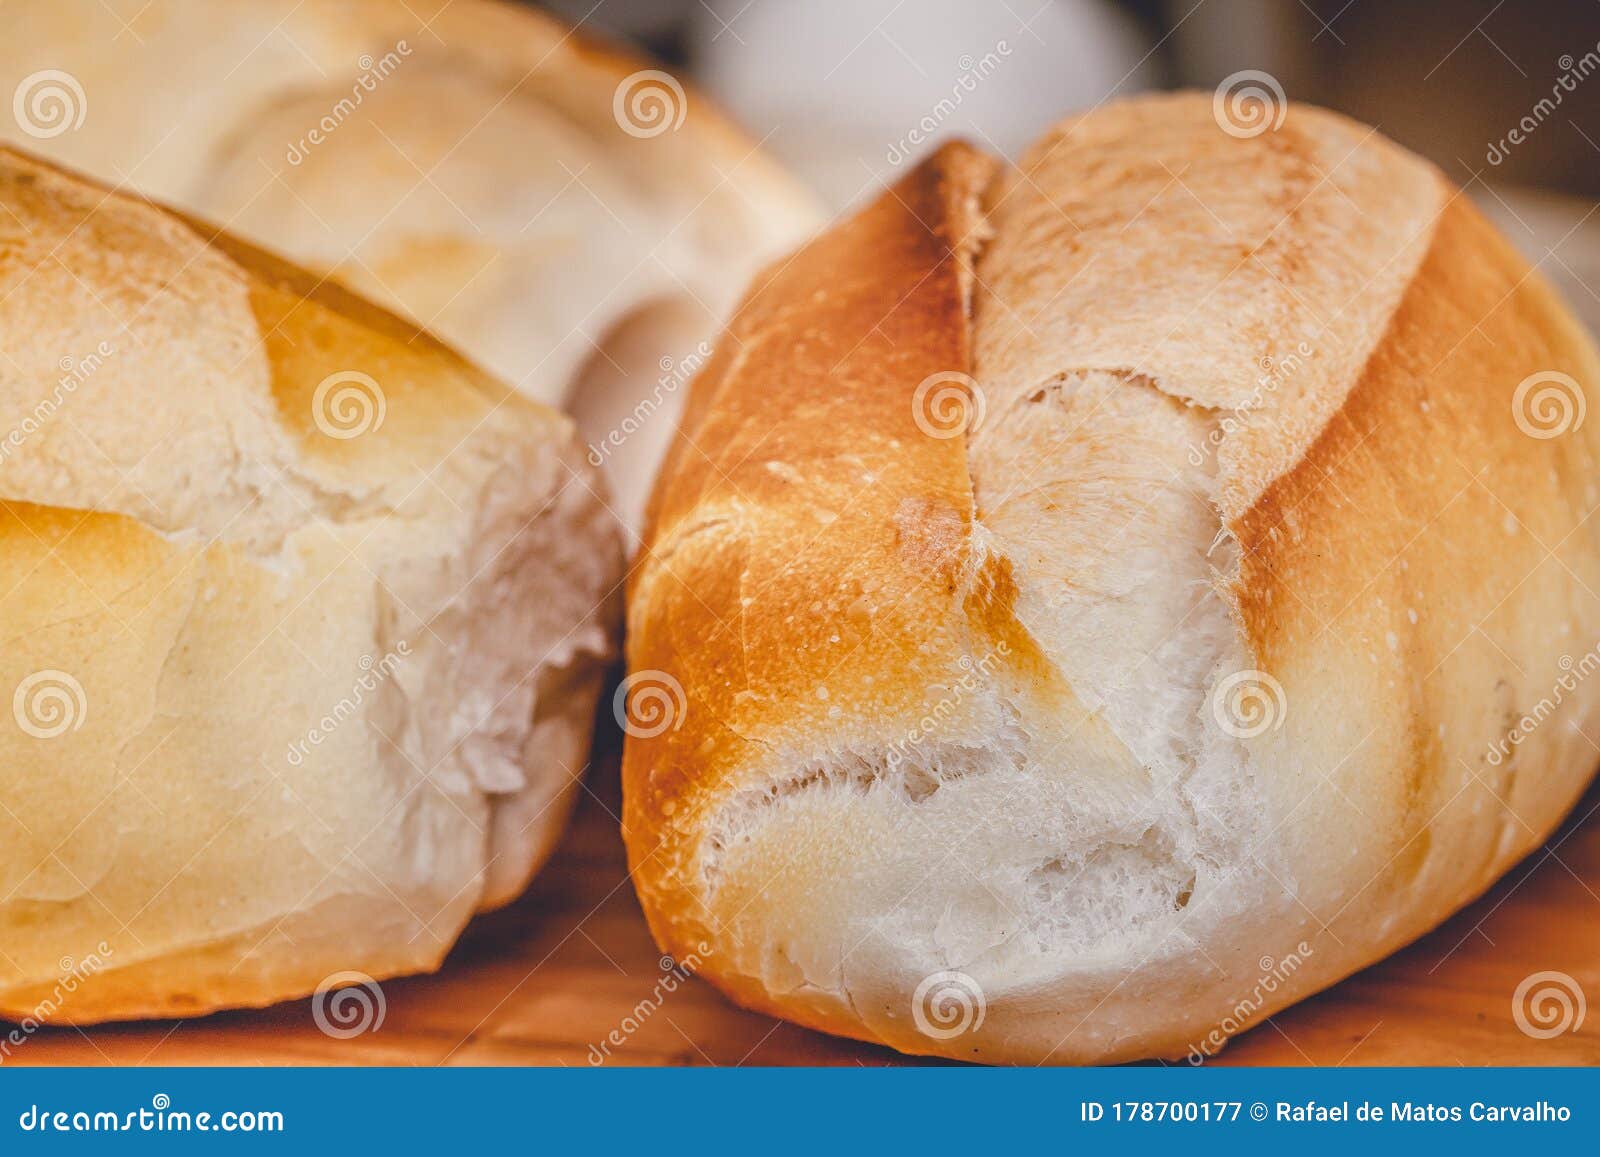 baked bread rolls, bakery, pÃÂ£o, pÃÂ£o francÃÂªs, padaria..